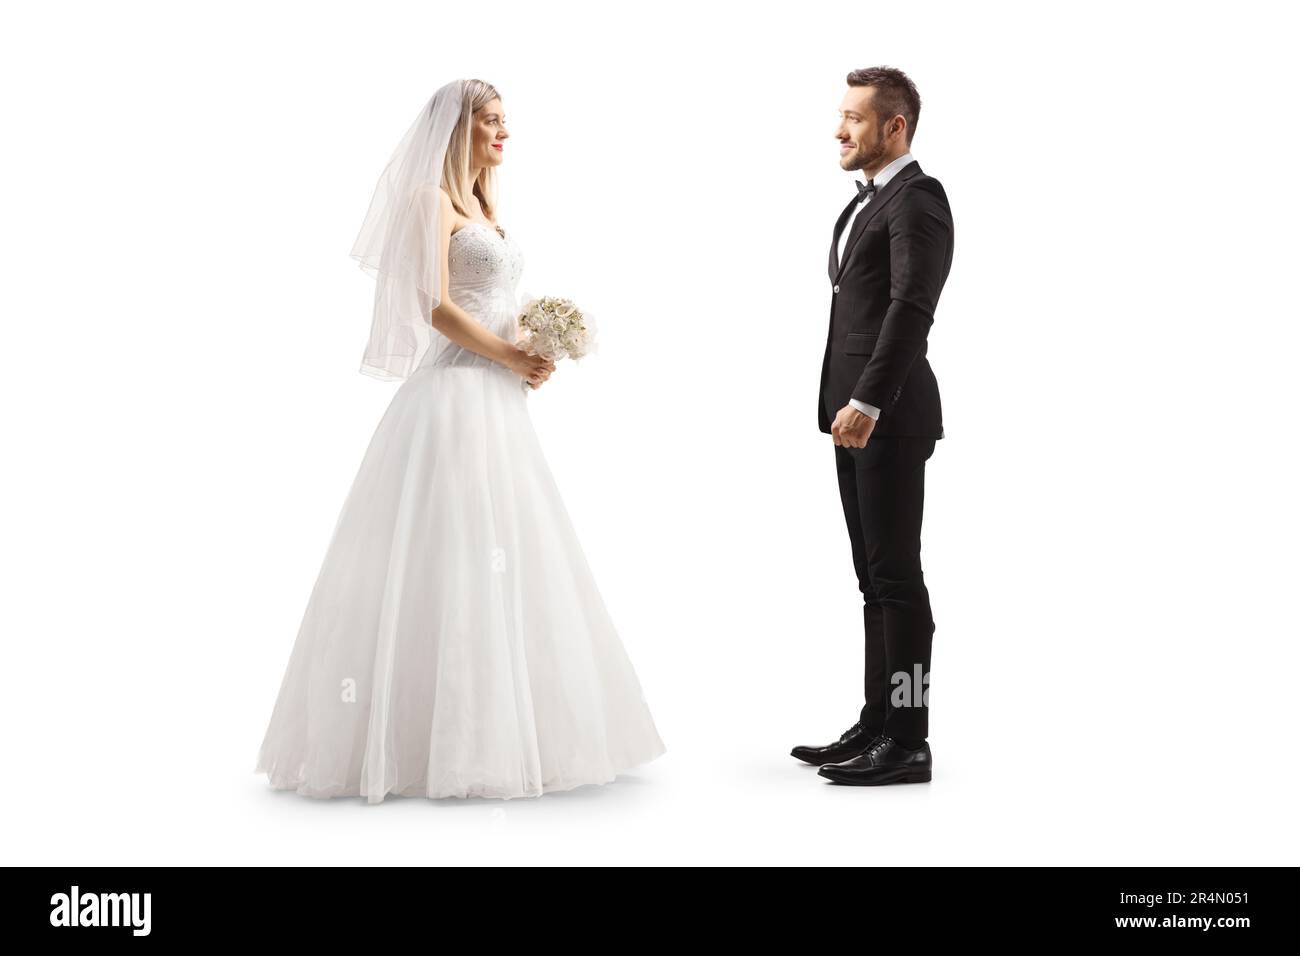 Disparo de perfil de longitud completa de una novia mirando a un novio aislado sobre fondo blanco Foto de stock